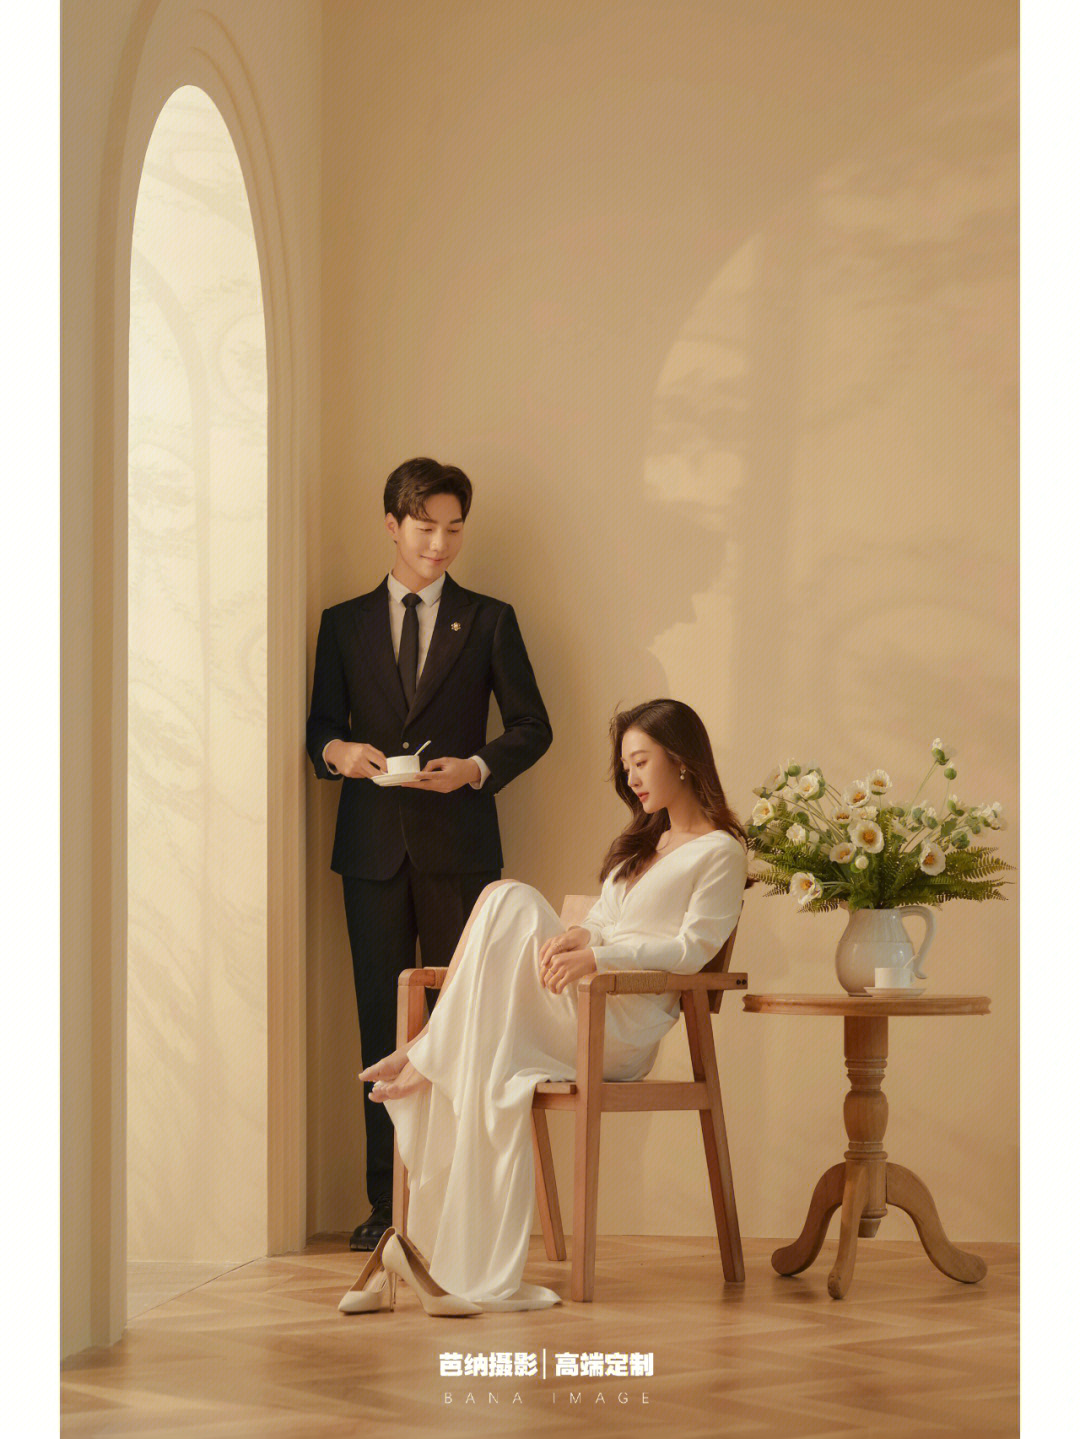 室内韩式极简婚纱照69浪漫仪式感满溢